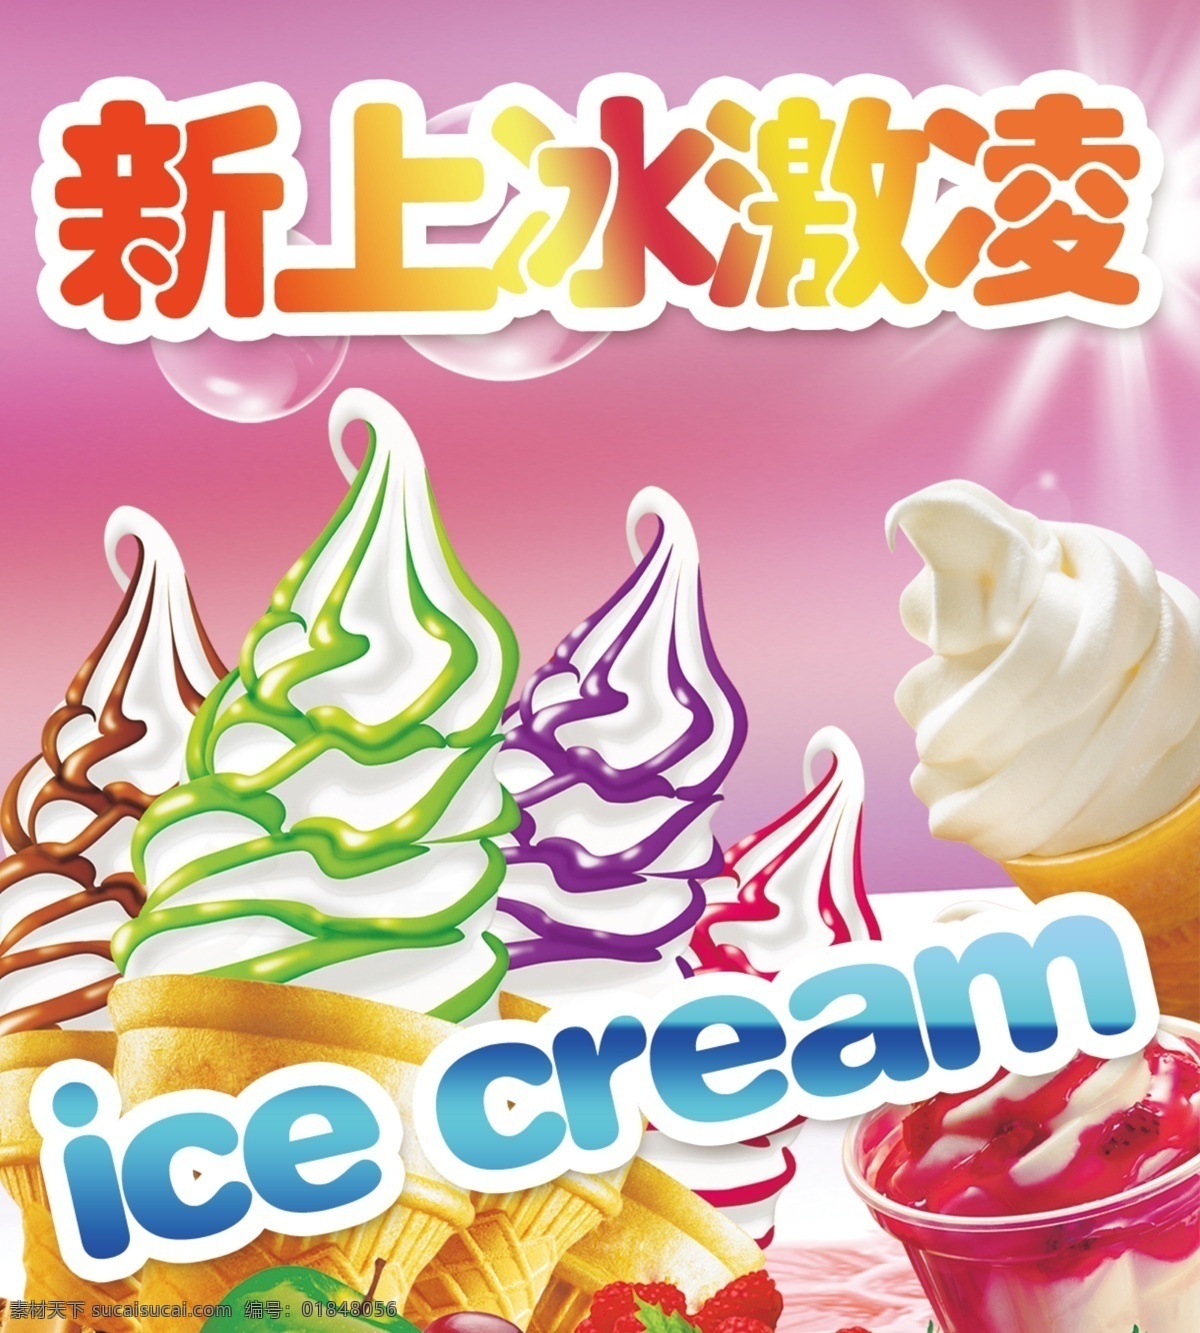 新上冰激凌 冰激凌 冰淇淋 雪糕 冷饮 冰淇淋海报 冰激凌海报 水果冰激凌